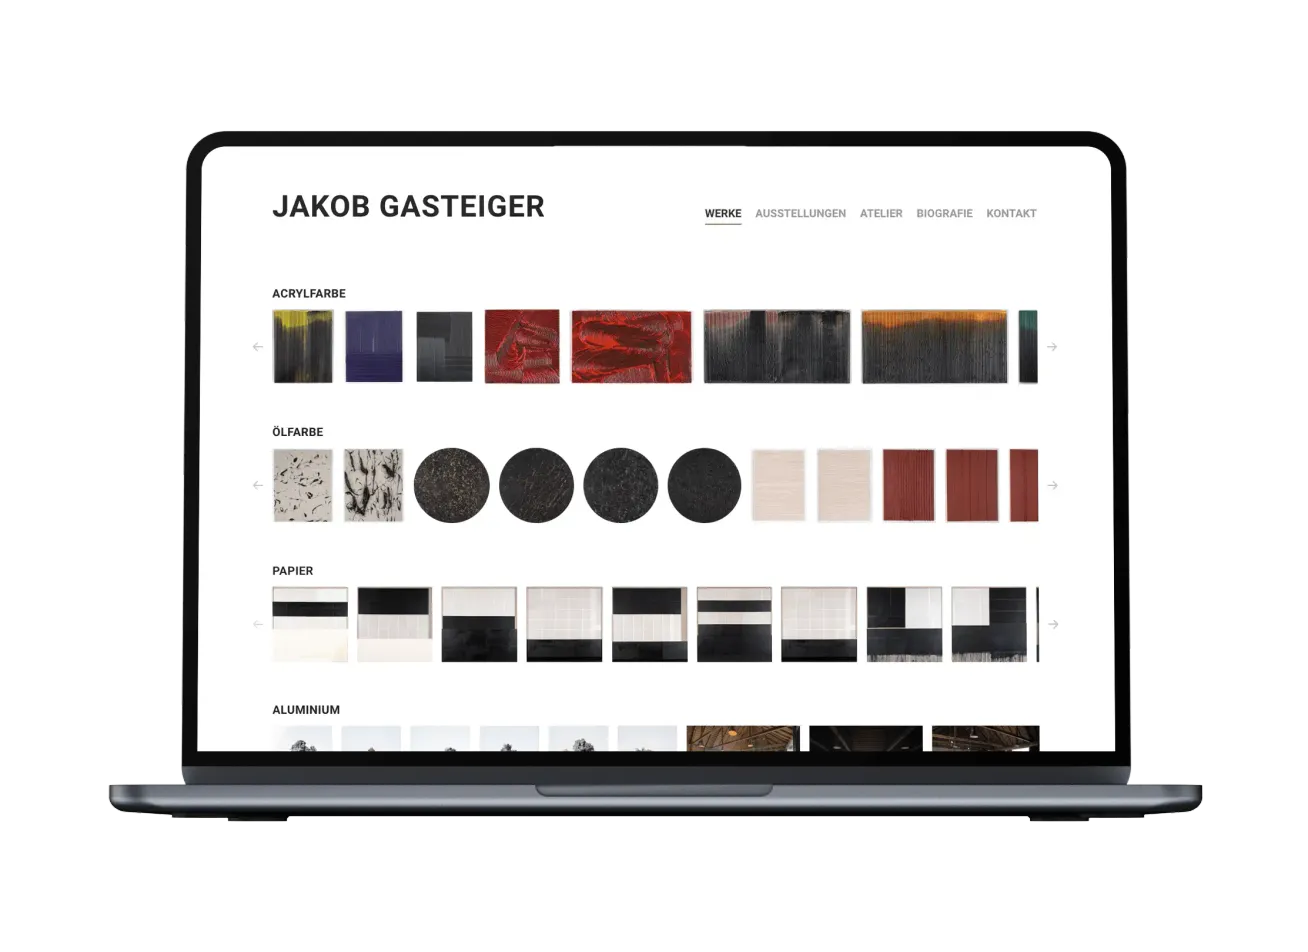 Laptop mit der Website von Jakob Gasteiger, Joomla-Website mit minimalistischem Design.